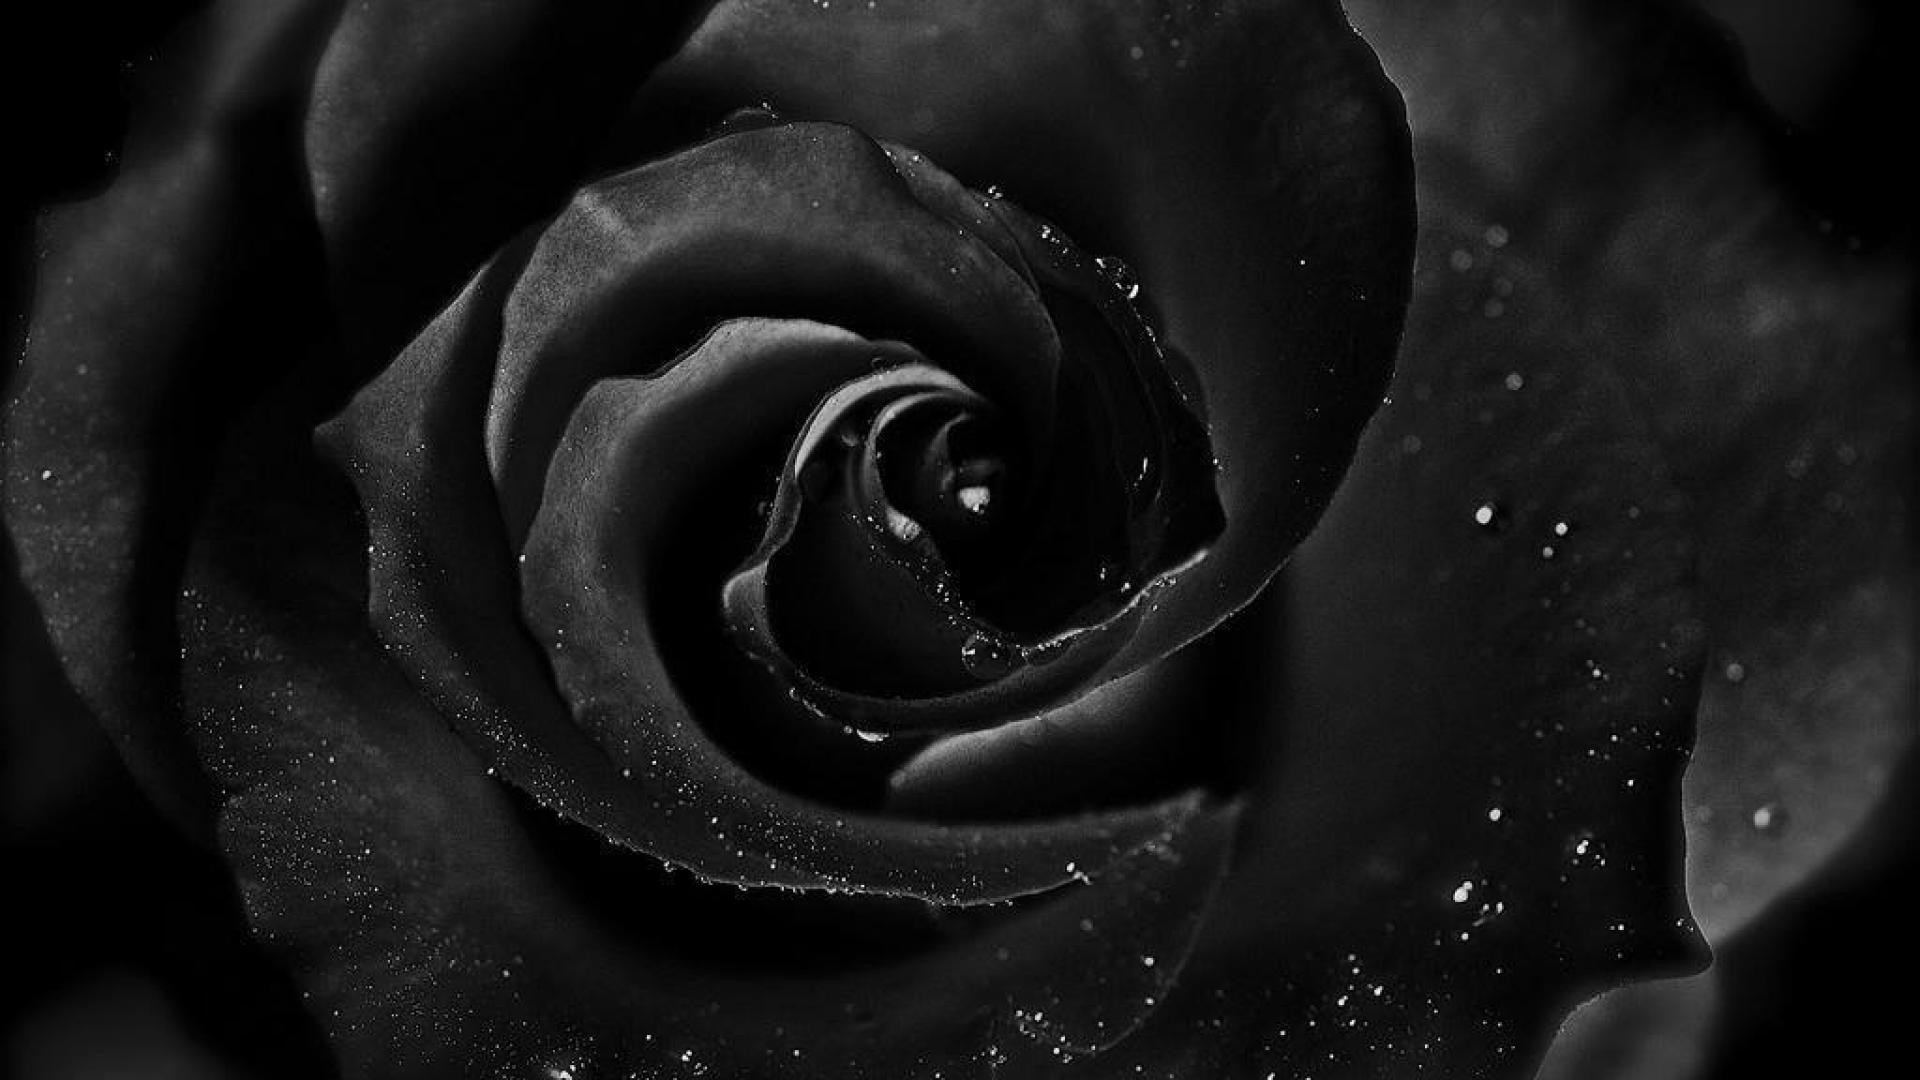 schwarz weiß rosentapete,rose,gartenrosen,schwarz,monochrome fotografie,schwarz und weiß